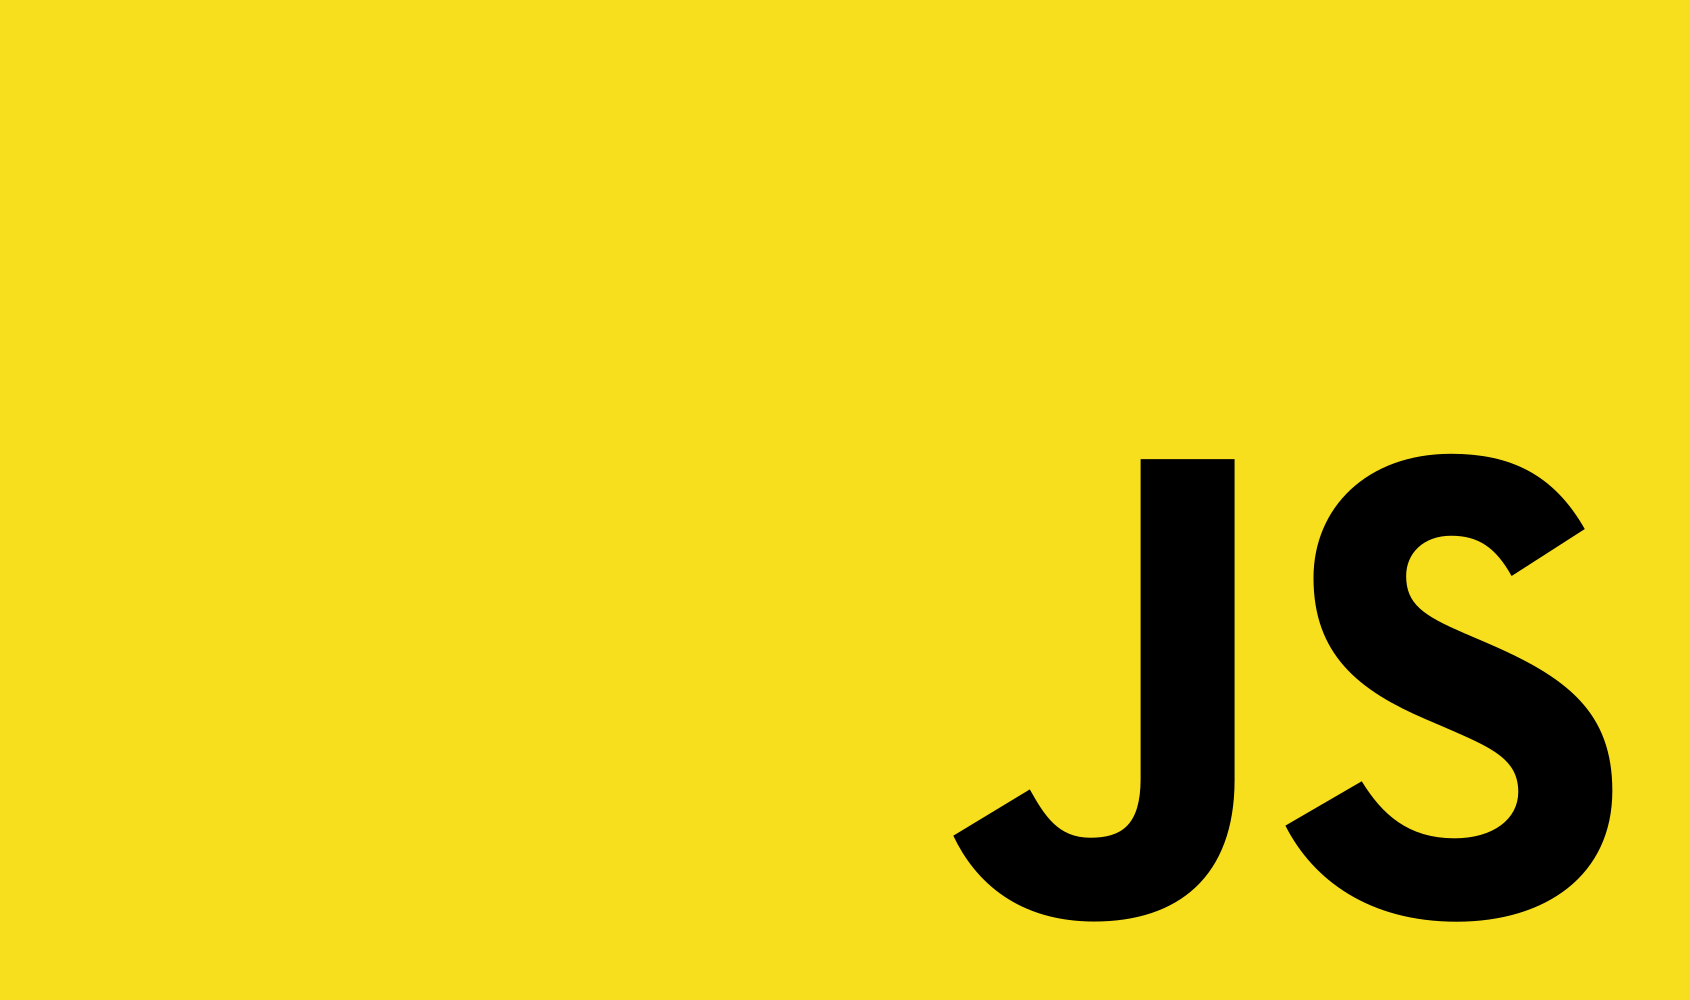 JavaScript Fiszki - Quizizz